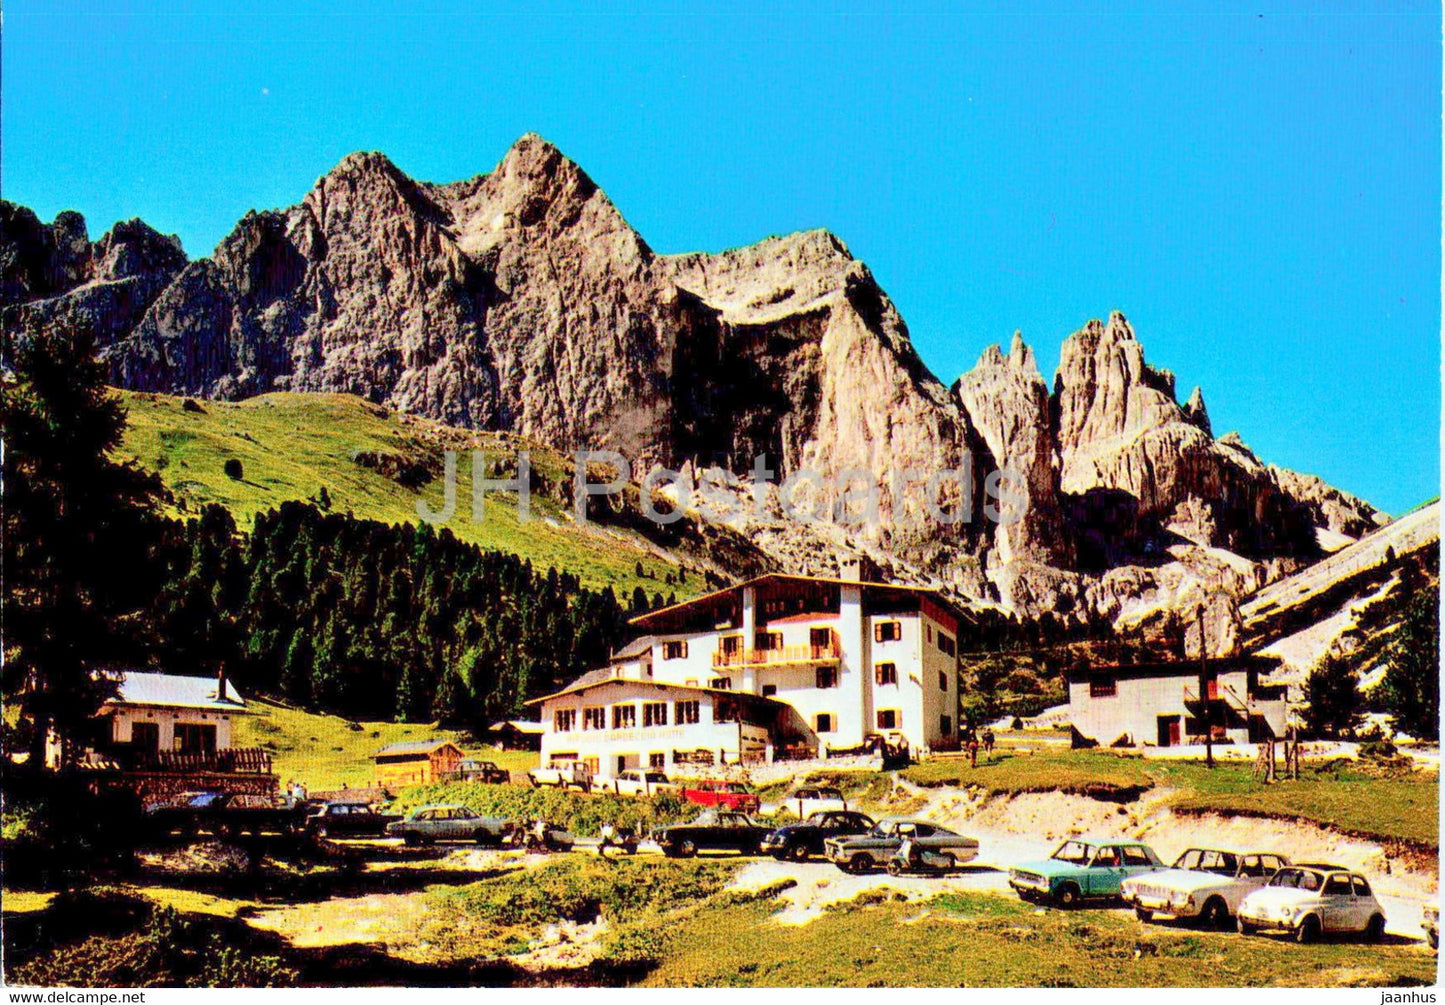 Dolomiti di Fassa - Rifugio Gardeccia - Gruppo del Catinaccio - car - Italy - unused - JH Postcards